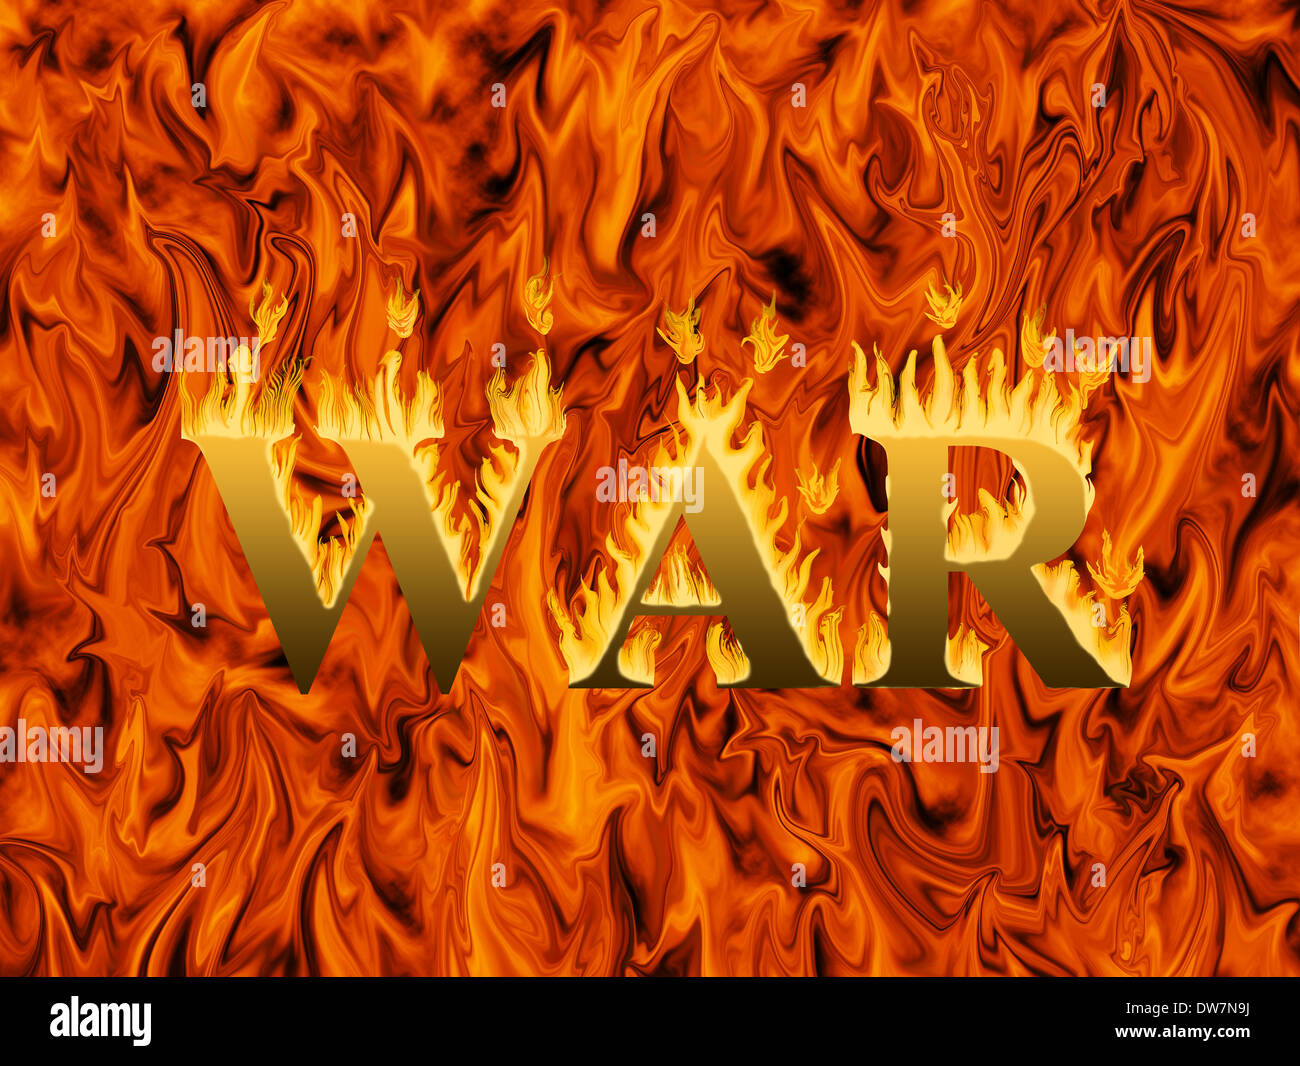 Palabra guerra envuelta en llamas sobre fondo infernal - Concepto de destrucción y las penurias de la guerra Foto de stock